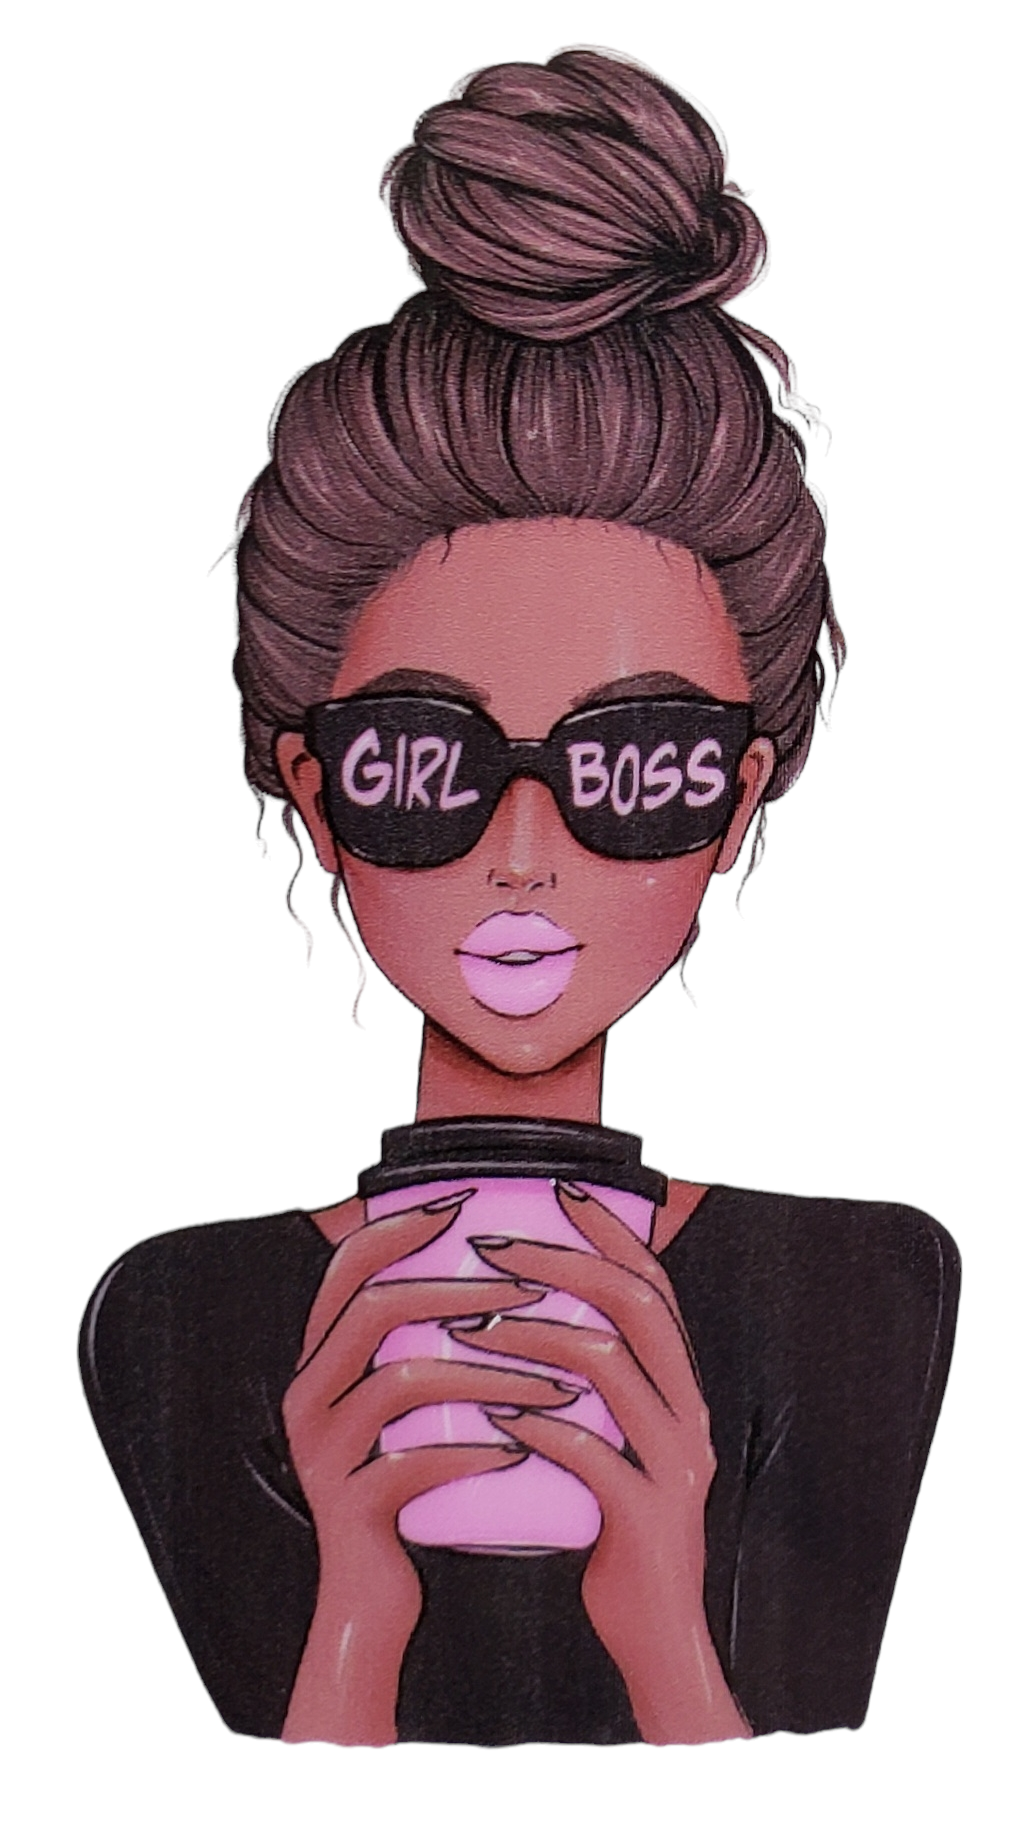 16oz Girl Boss Jar/Canister